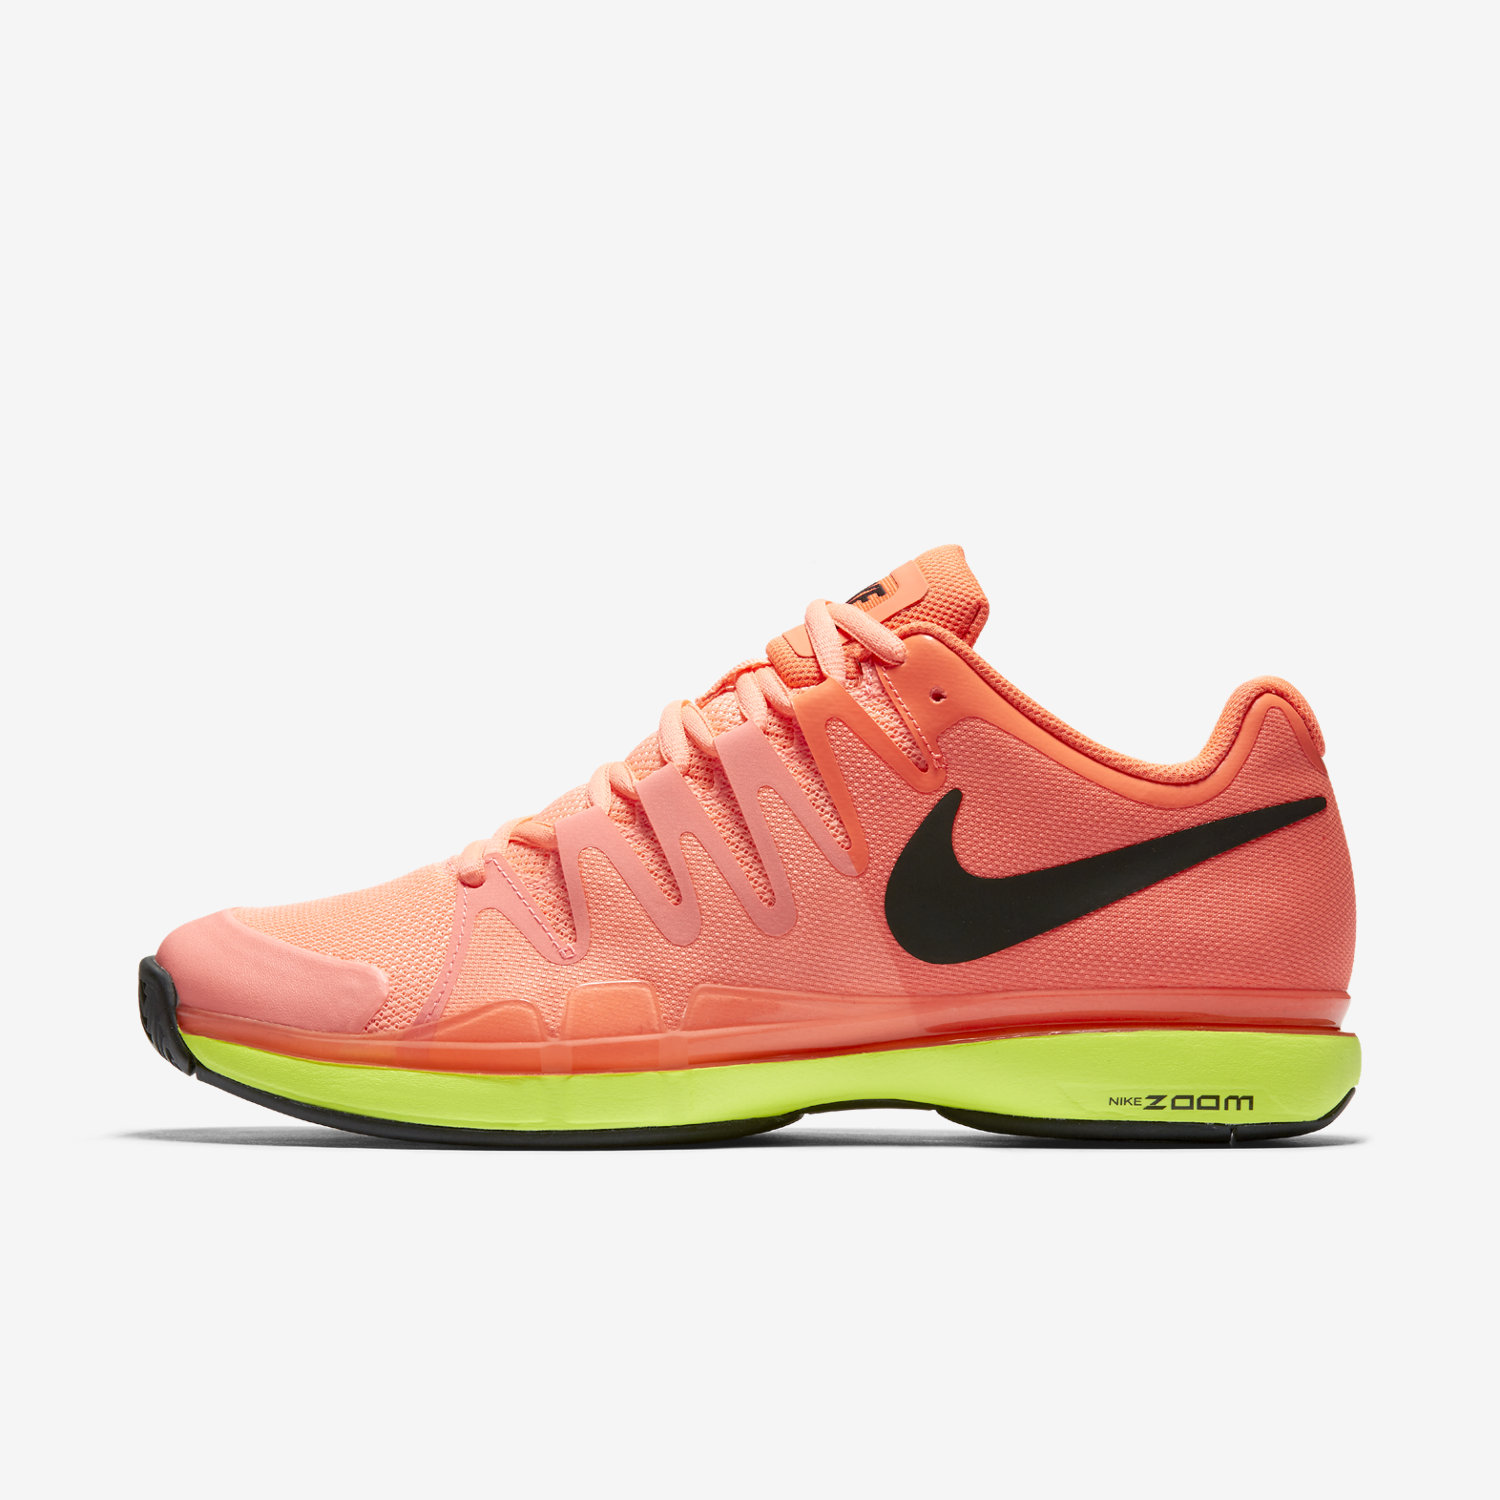 παπούτσια τένις ανδρικα NikeCourt Zoom Vapor 9.5 Tour πορτοκαλι/πορτοκαλι/μαυρα 82520751QR